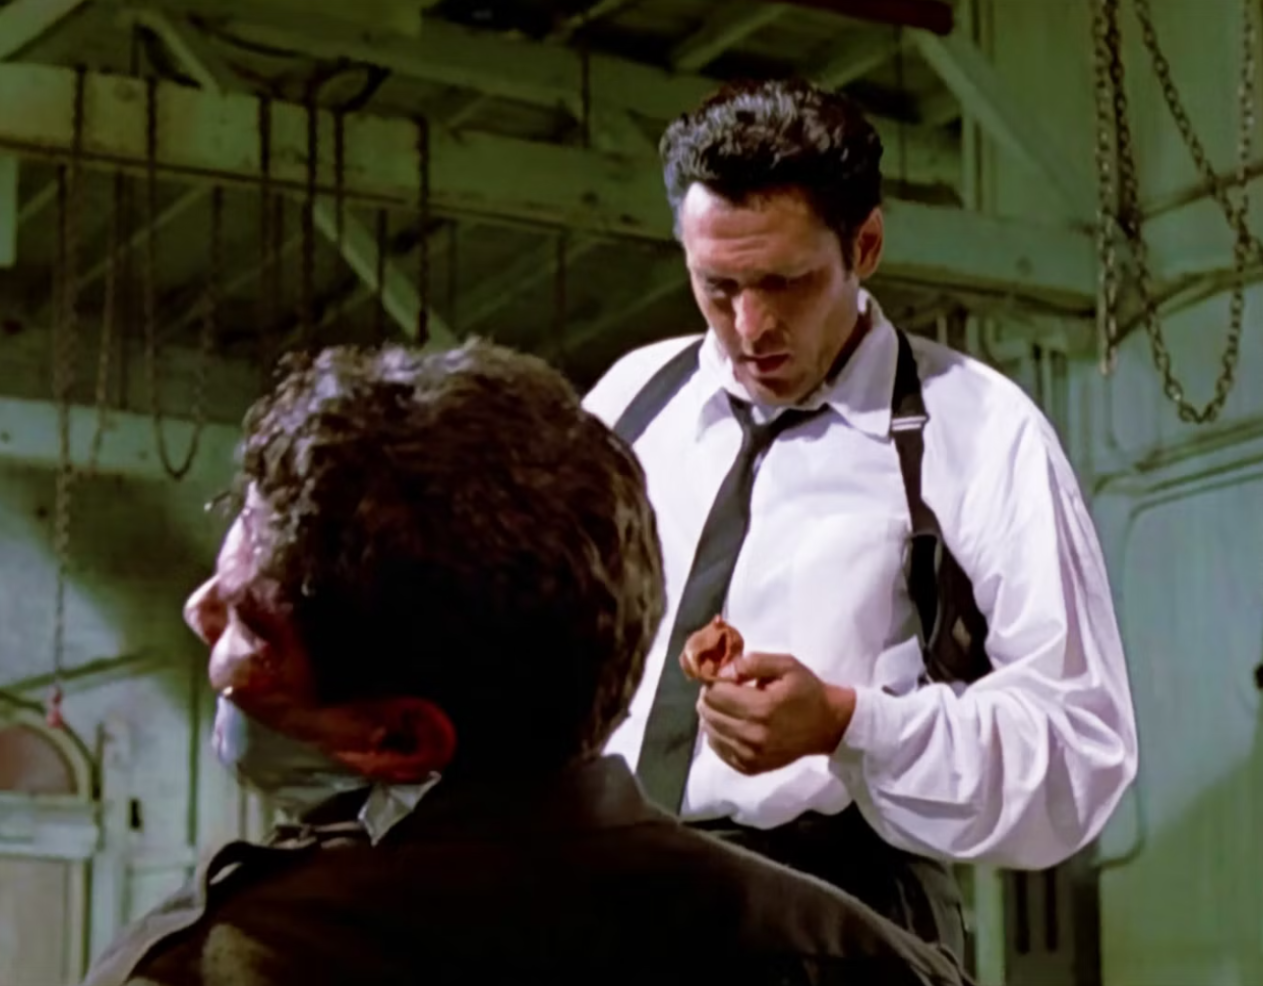 مايكل مادسن يؤدي دور مستر بلوند في مشهد قطع أذن شرطي بفيلم كلاب المستودع الذي أخرجه كوينتين تارانتينو عام 1992 